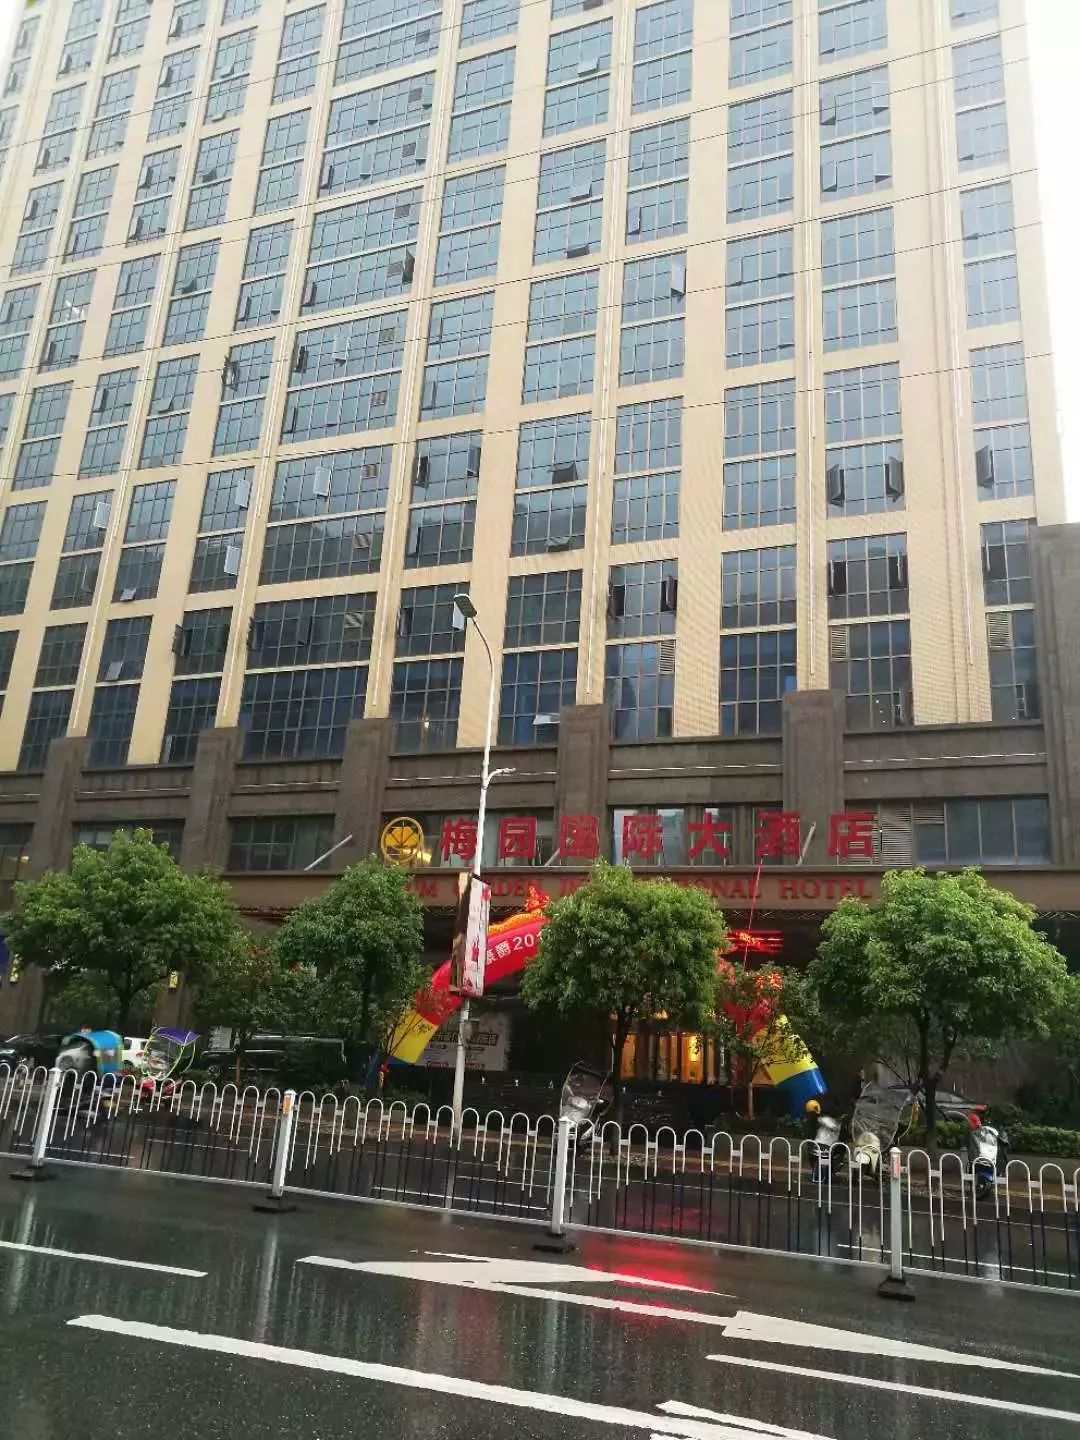 为何萍乡人都要跑到梅园国际大酒店去领高档丝巾?结果发现有这些事